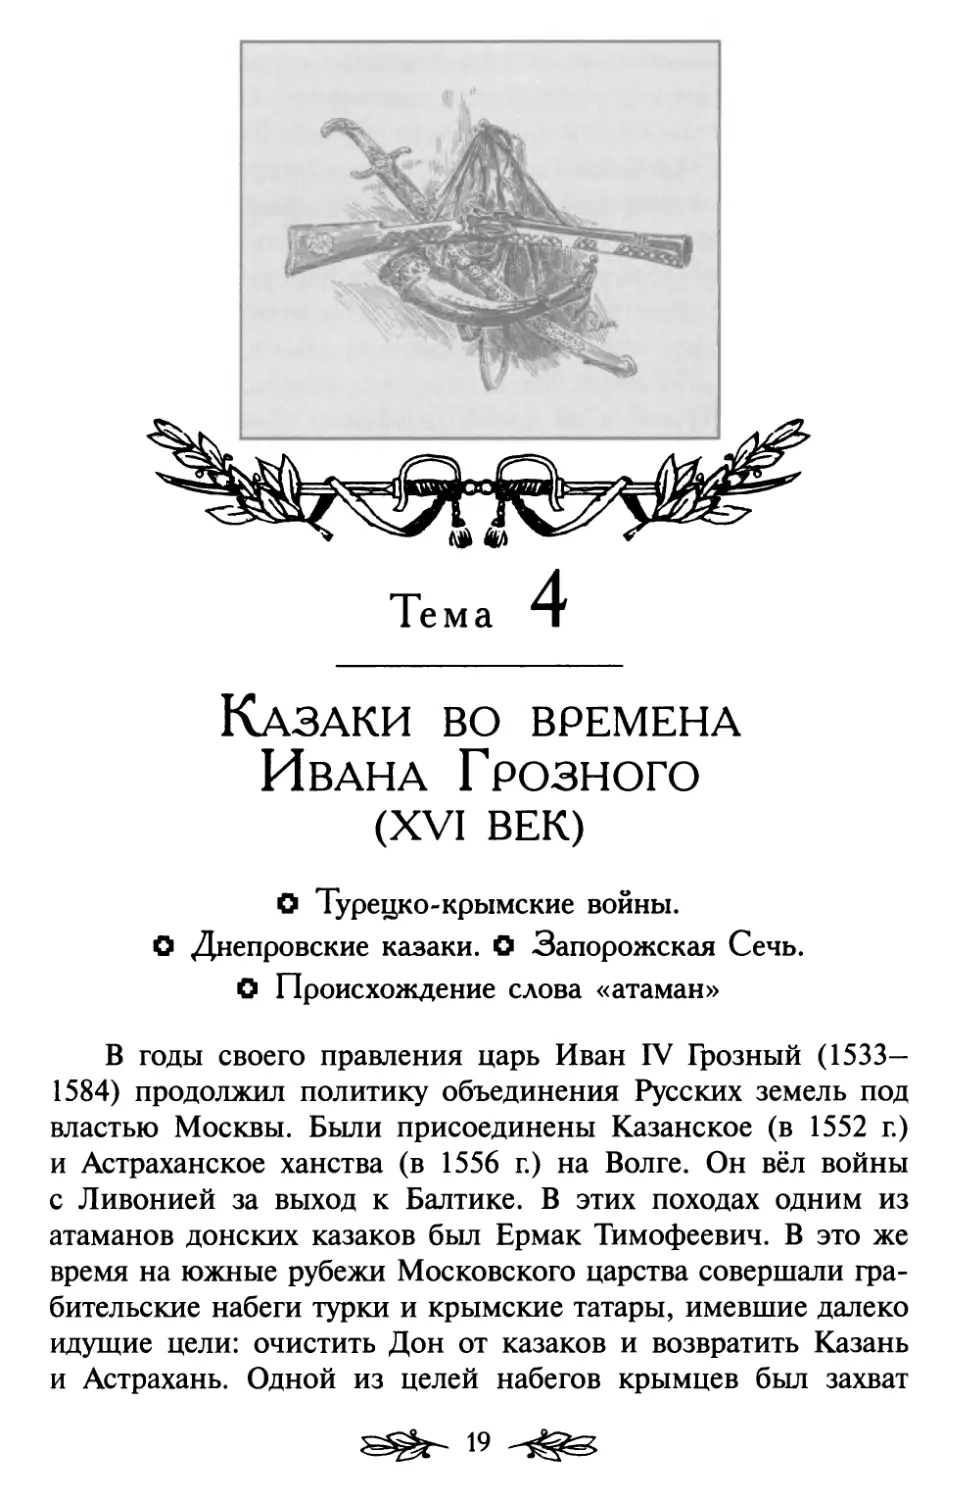 Тема 4. Казаки во времена Ивана Грозного (XVI век)